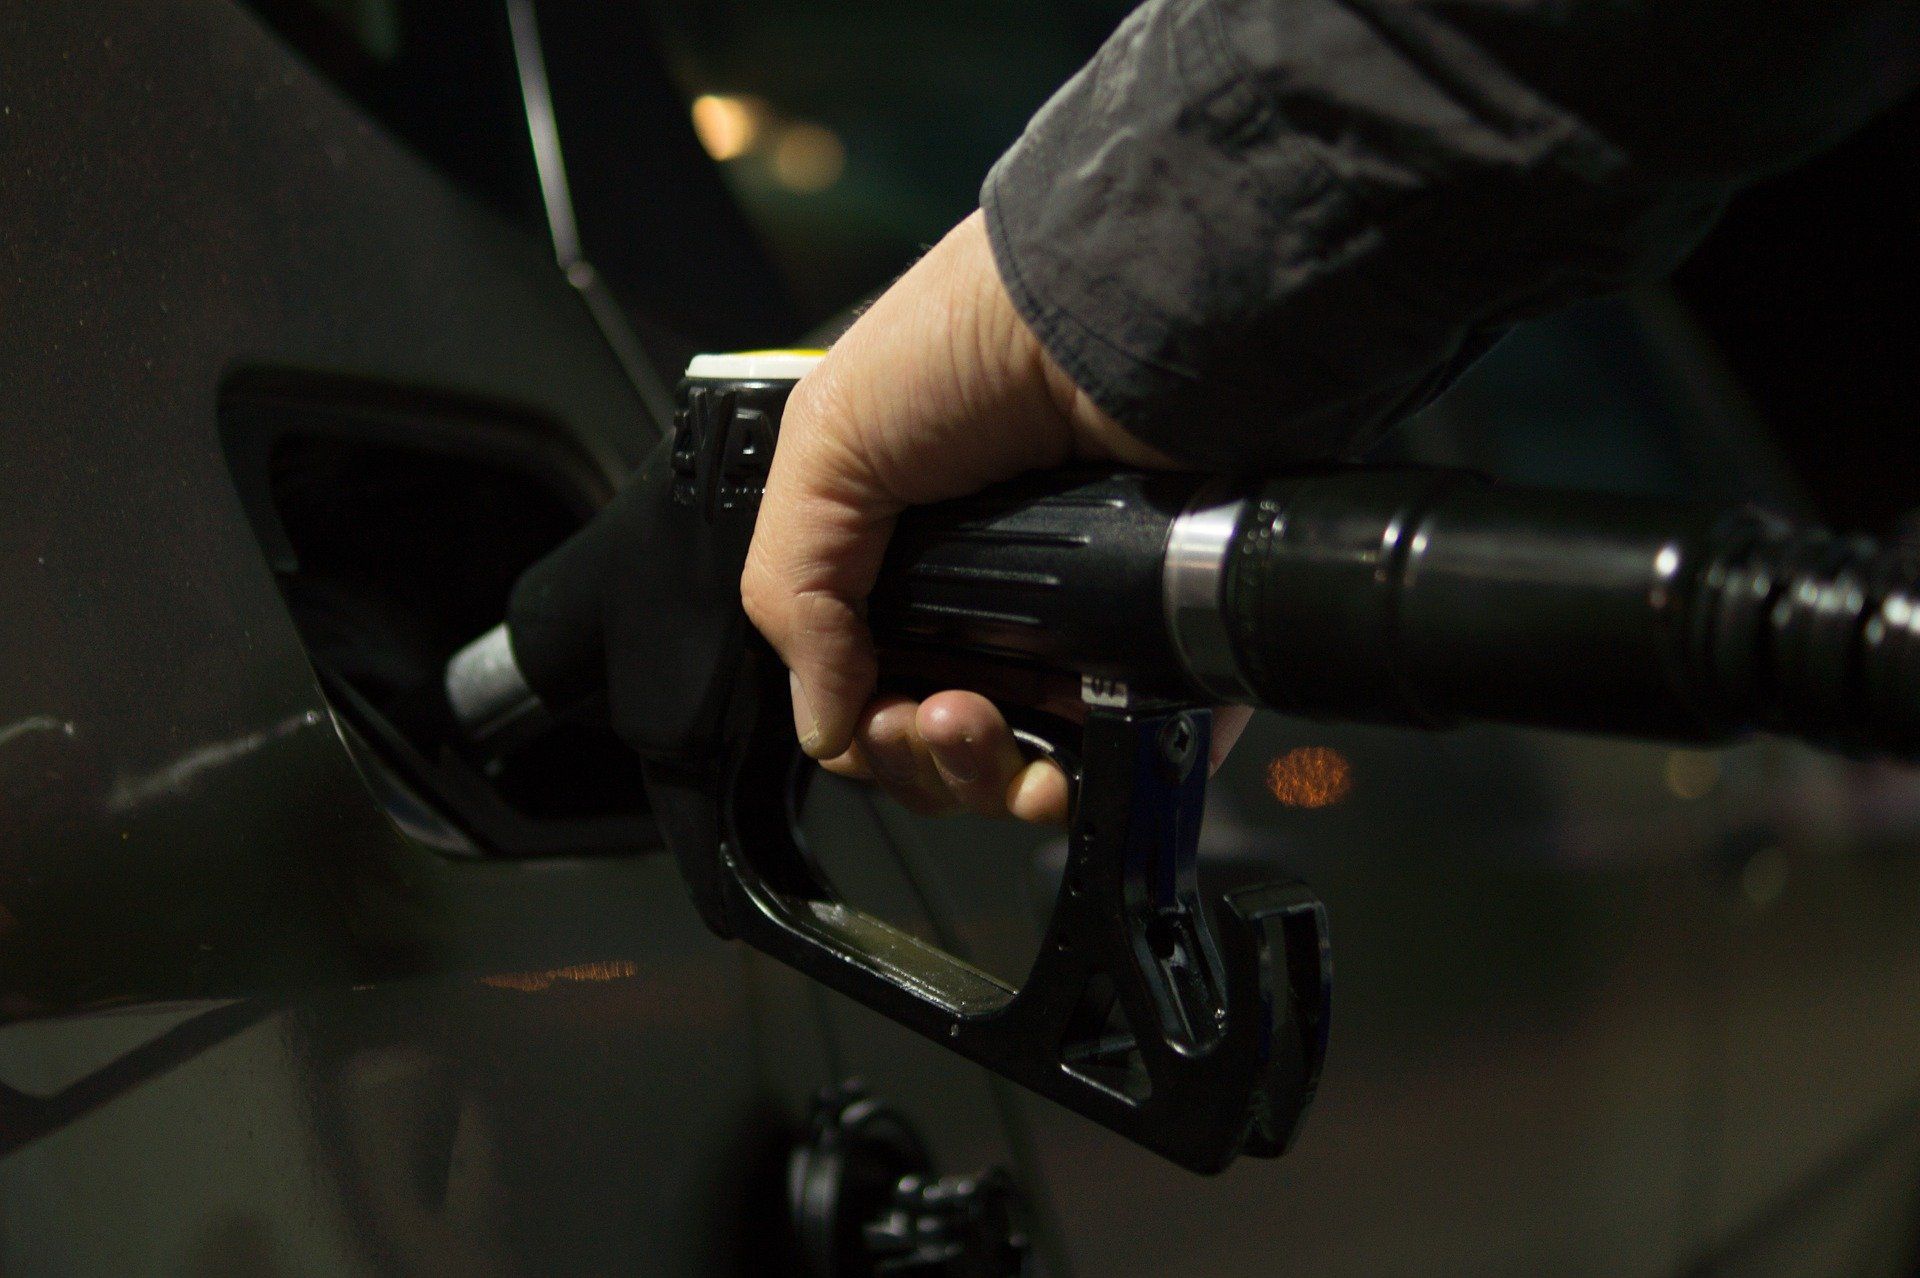 Fuel price July 25, 2022: Petrol Rs 106.31, diesel Rs 94.27 in Mumbai